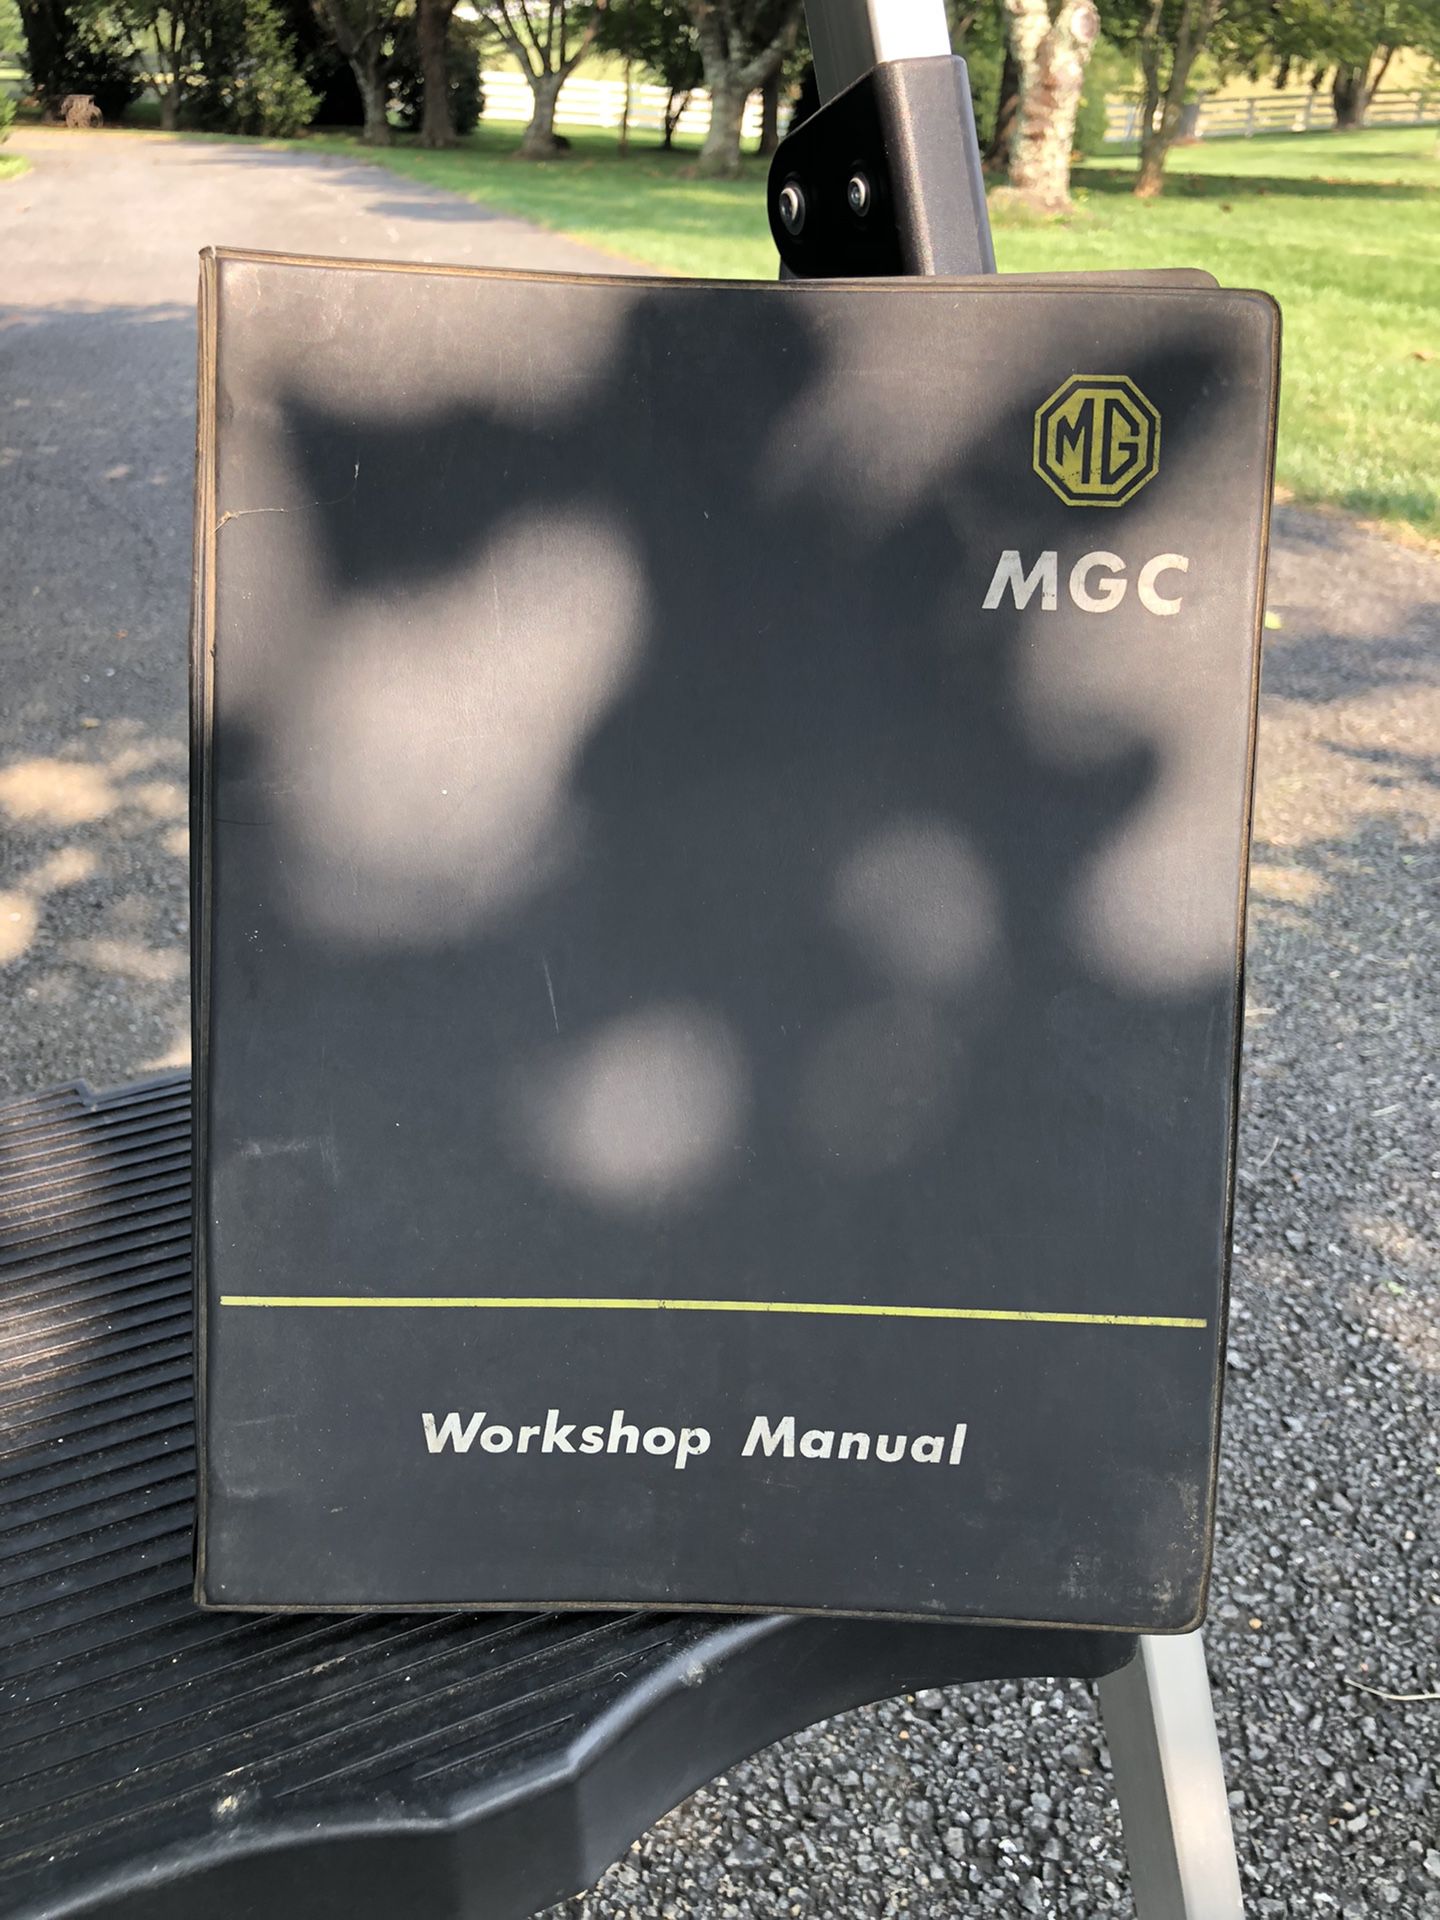 Workshop Manual For Model MGC